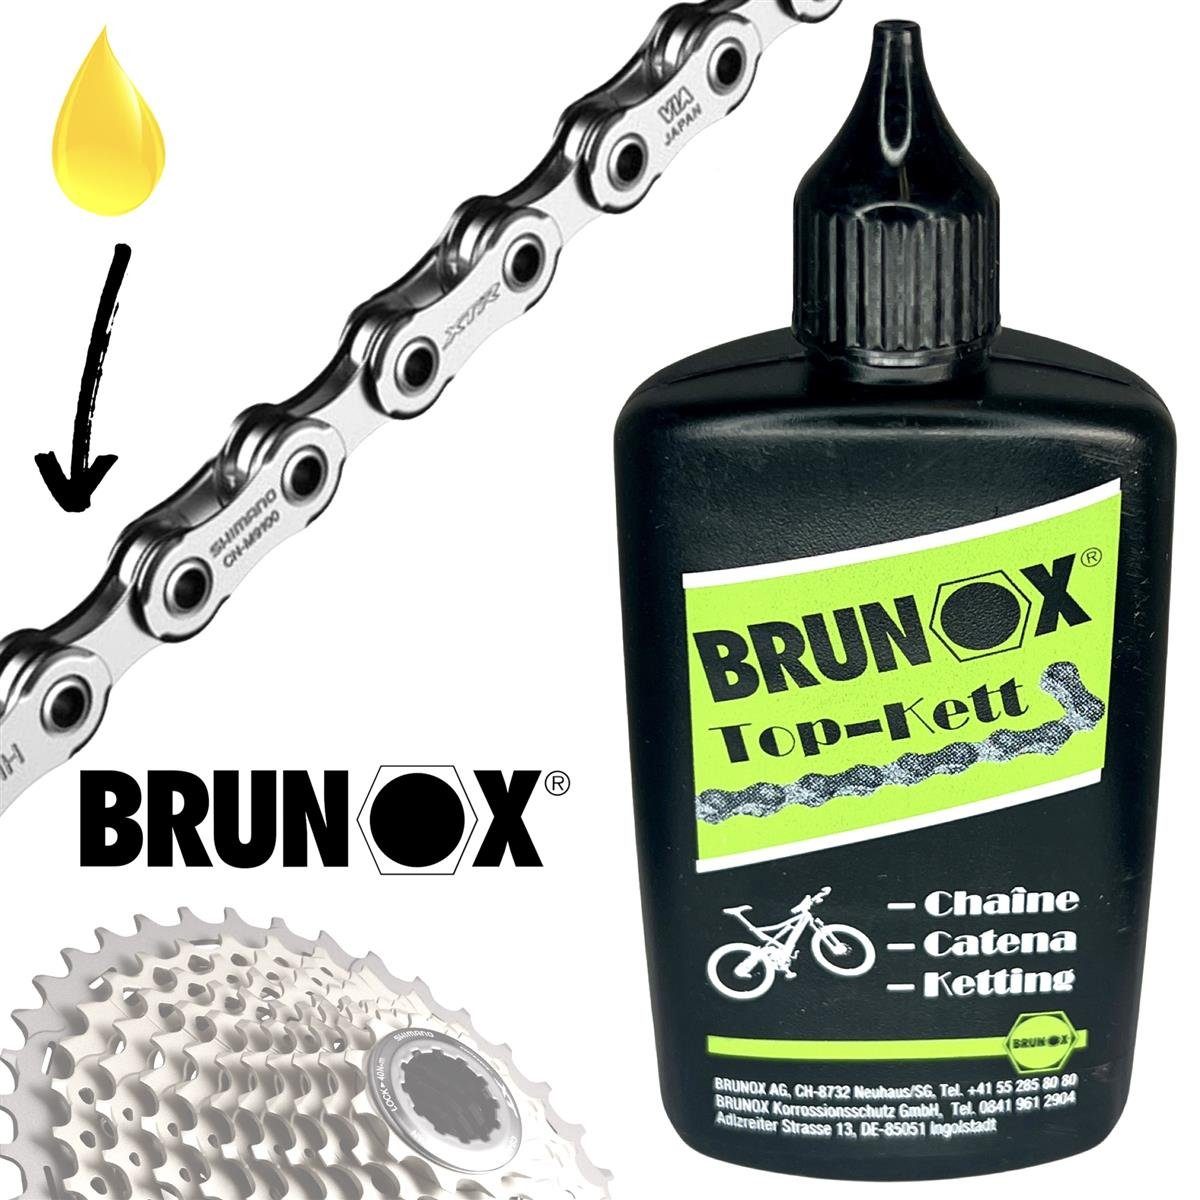 Brunox Fahrrad-Montageständer Kettenpflegemittel Kettenöl Top-Kett Brunox 100ml Fahrrad